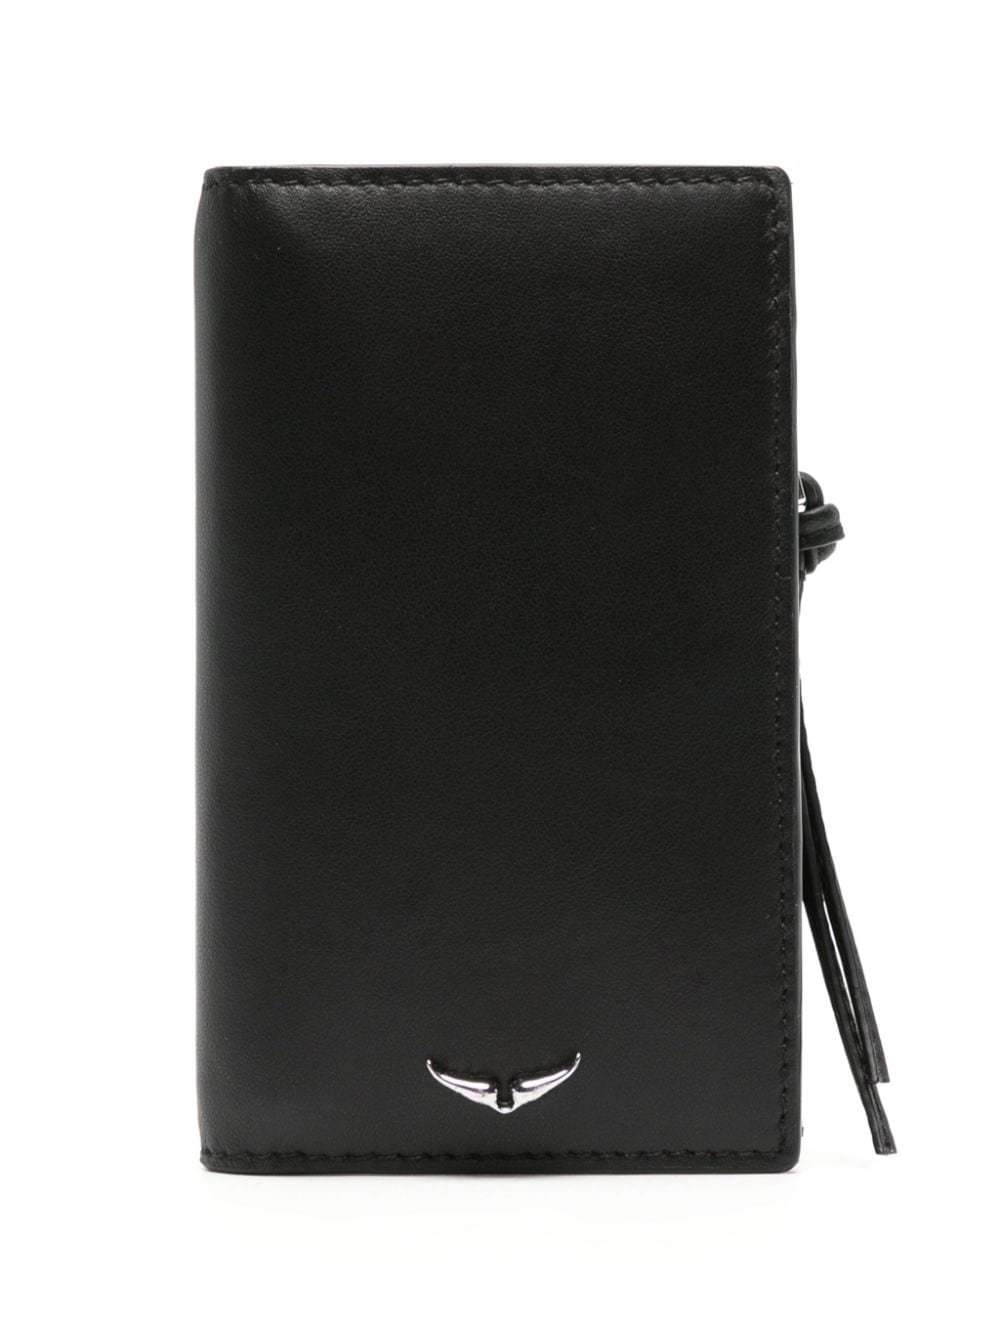 Zadig&Voltaire Compact Eternal leather cardholder - Black von Zadig&Voltaire